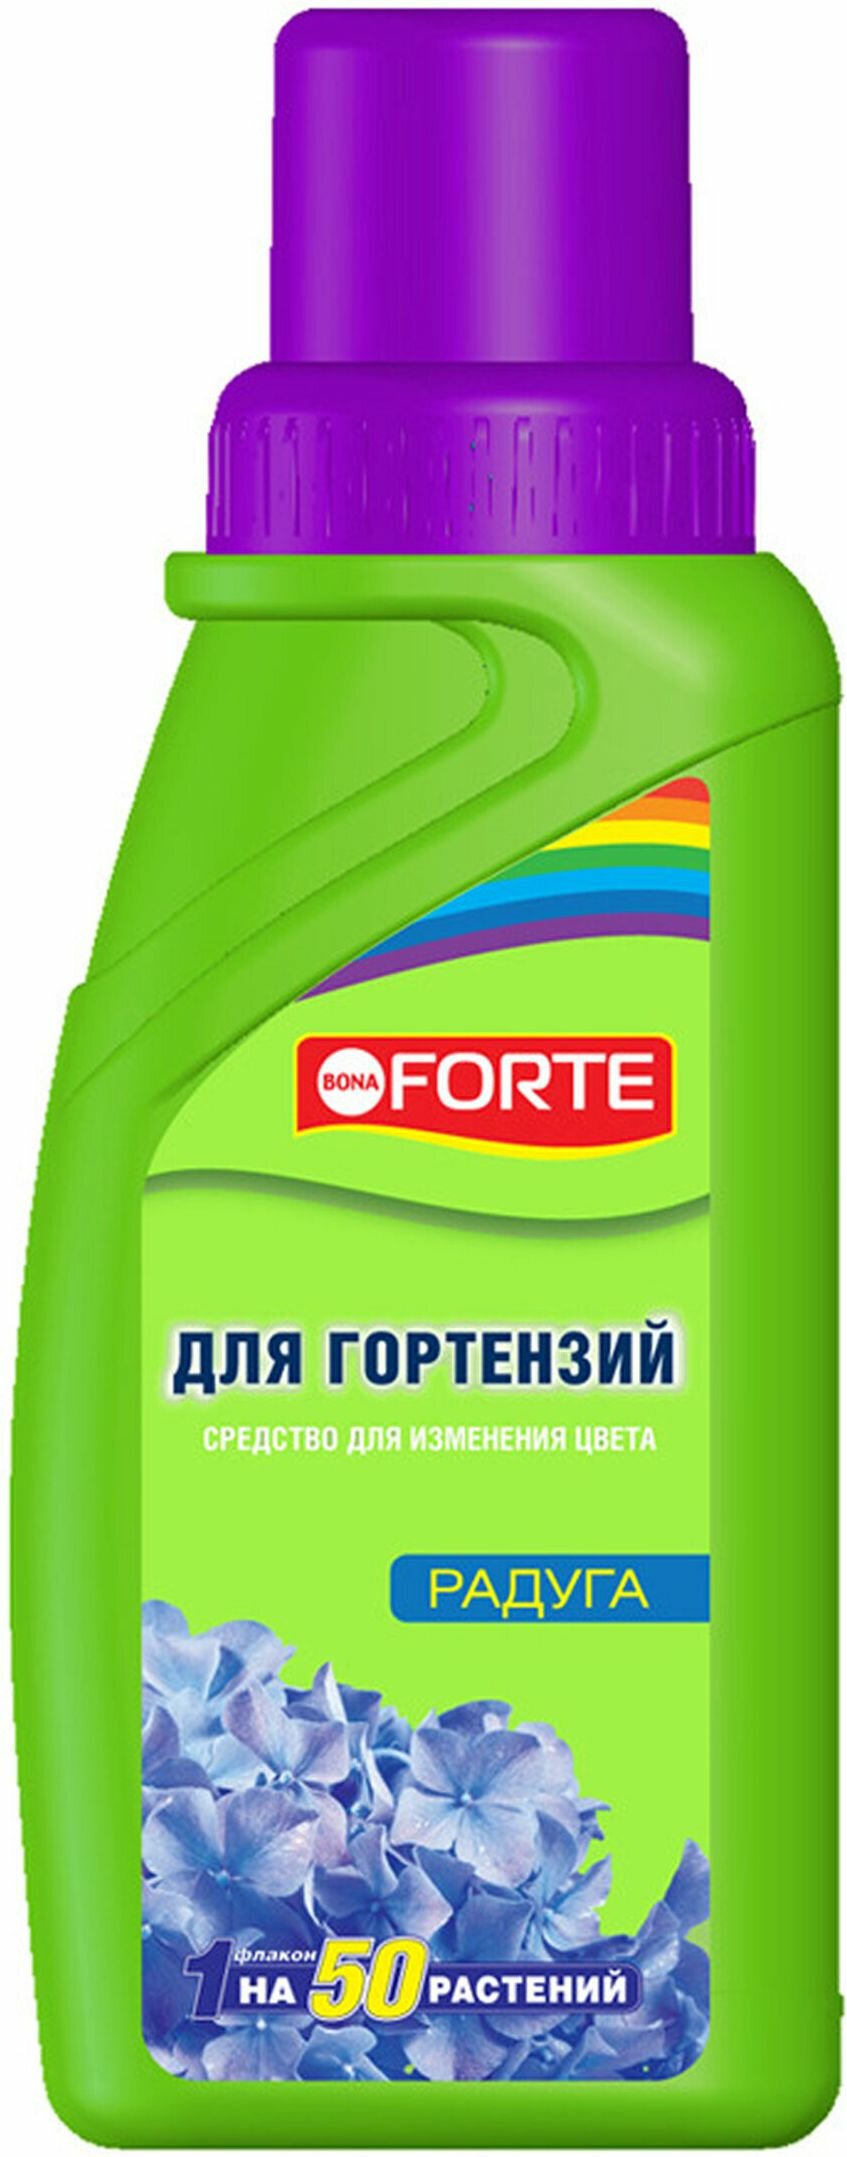 Bona Forte Средство для изменения цвета гортензий 285 мл